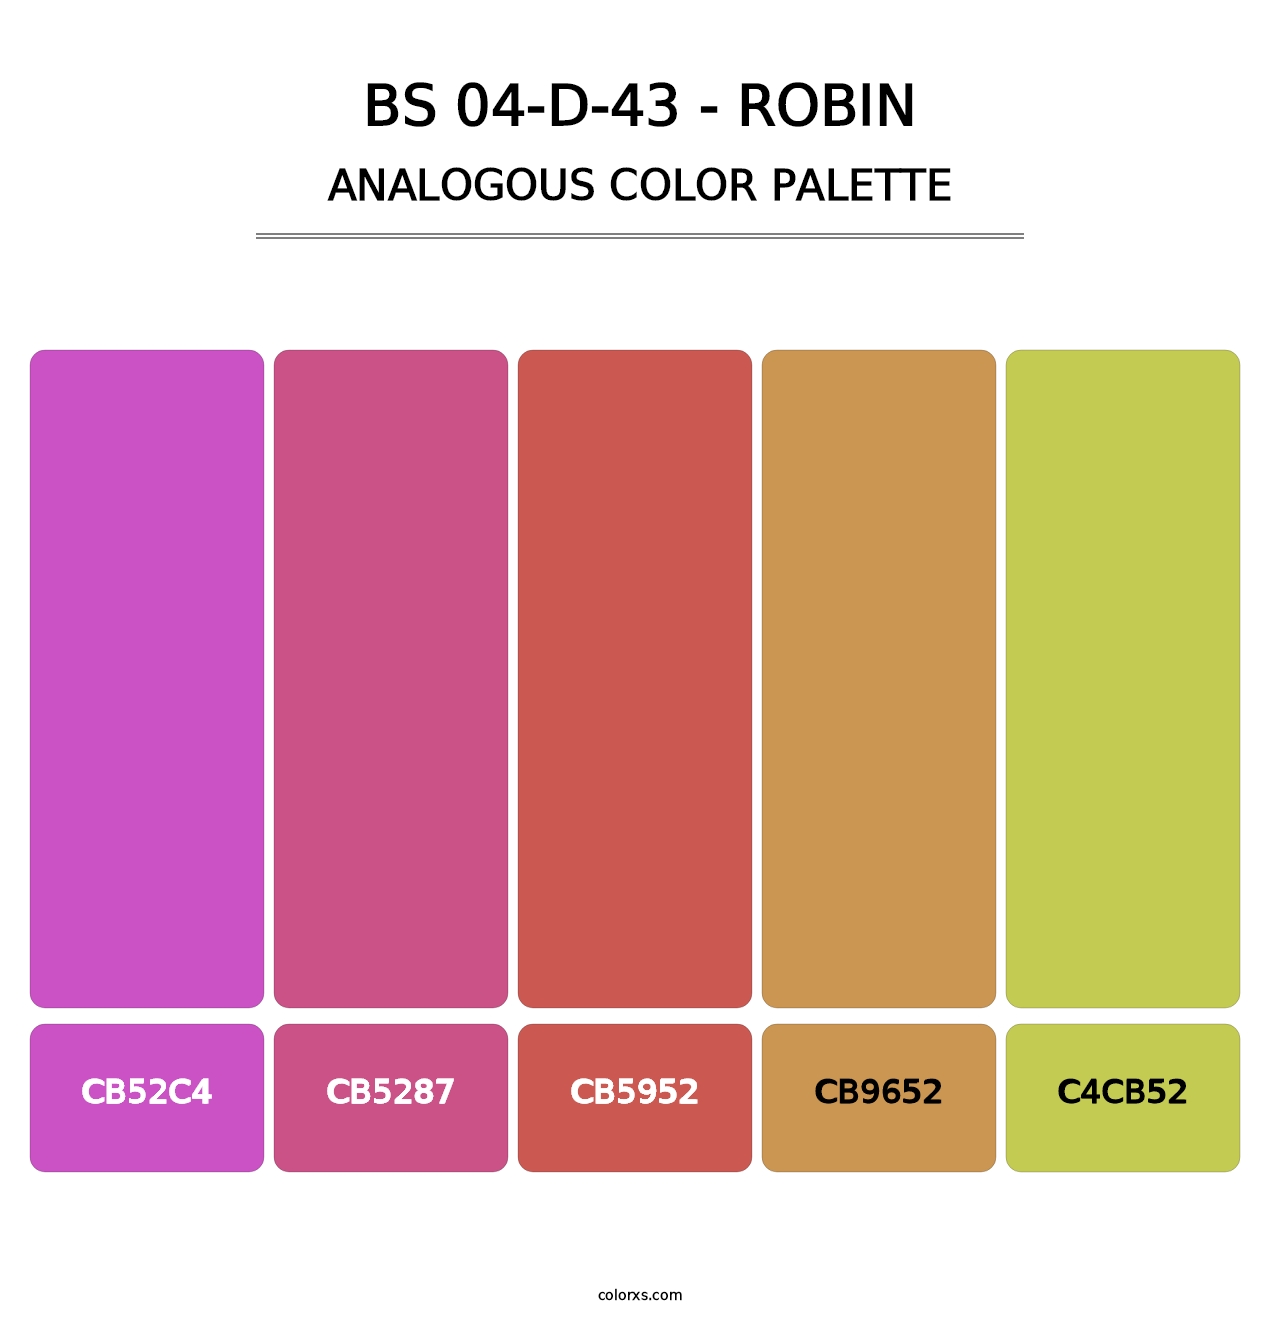 BS 04-D-43 - Robin - Analogous Color Palette